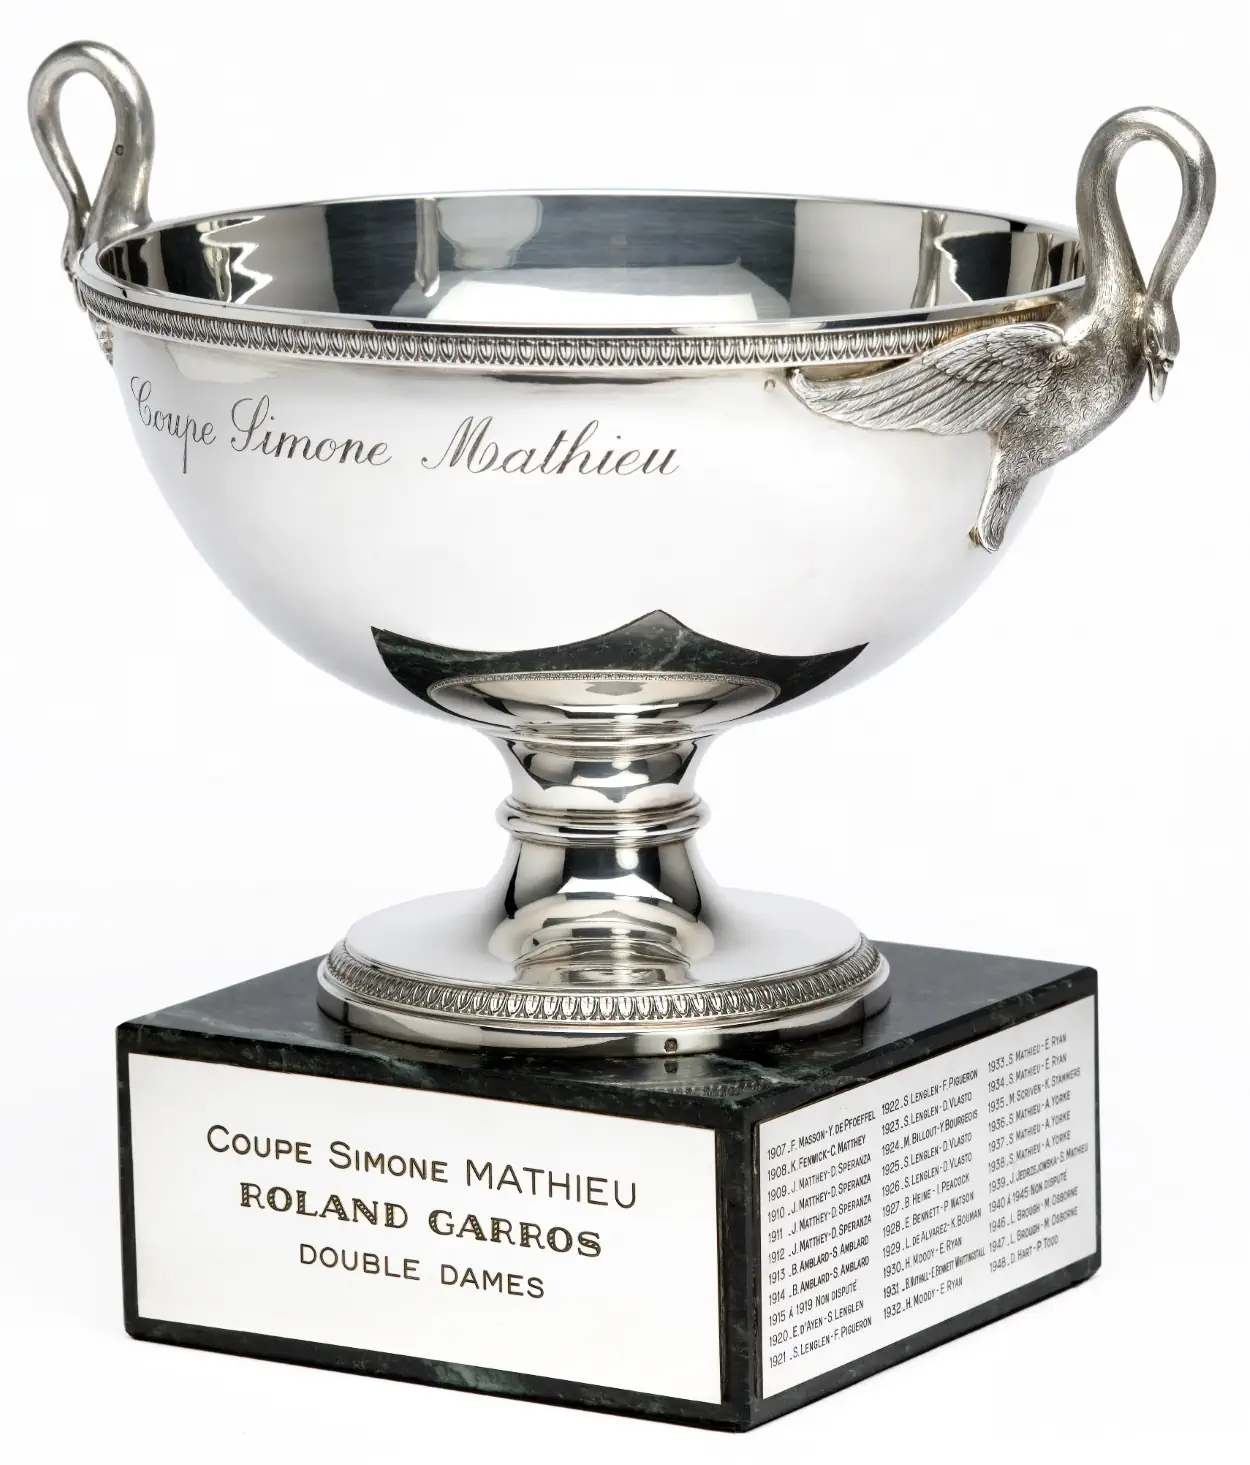 Le savoir-faire de Mellerio révélé dans les légendaires trophées de Roland-Garros